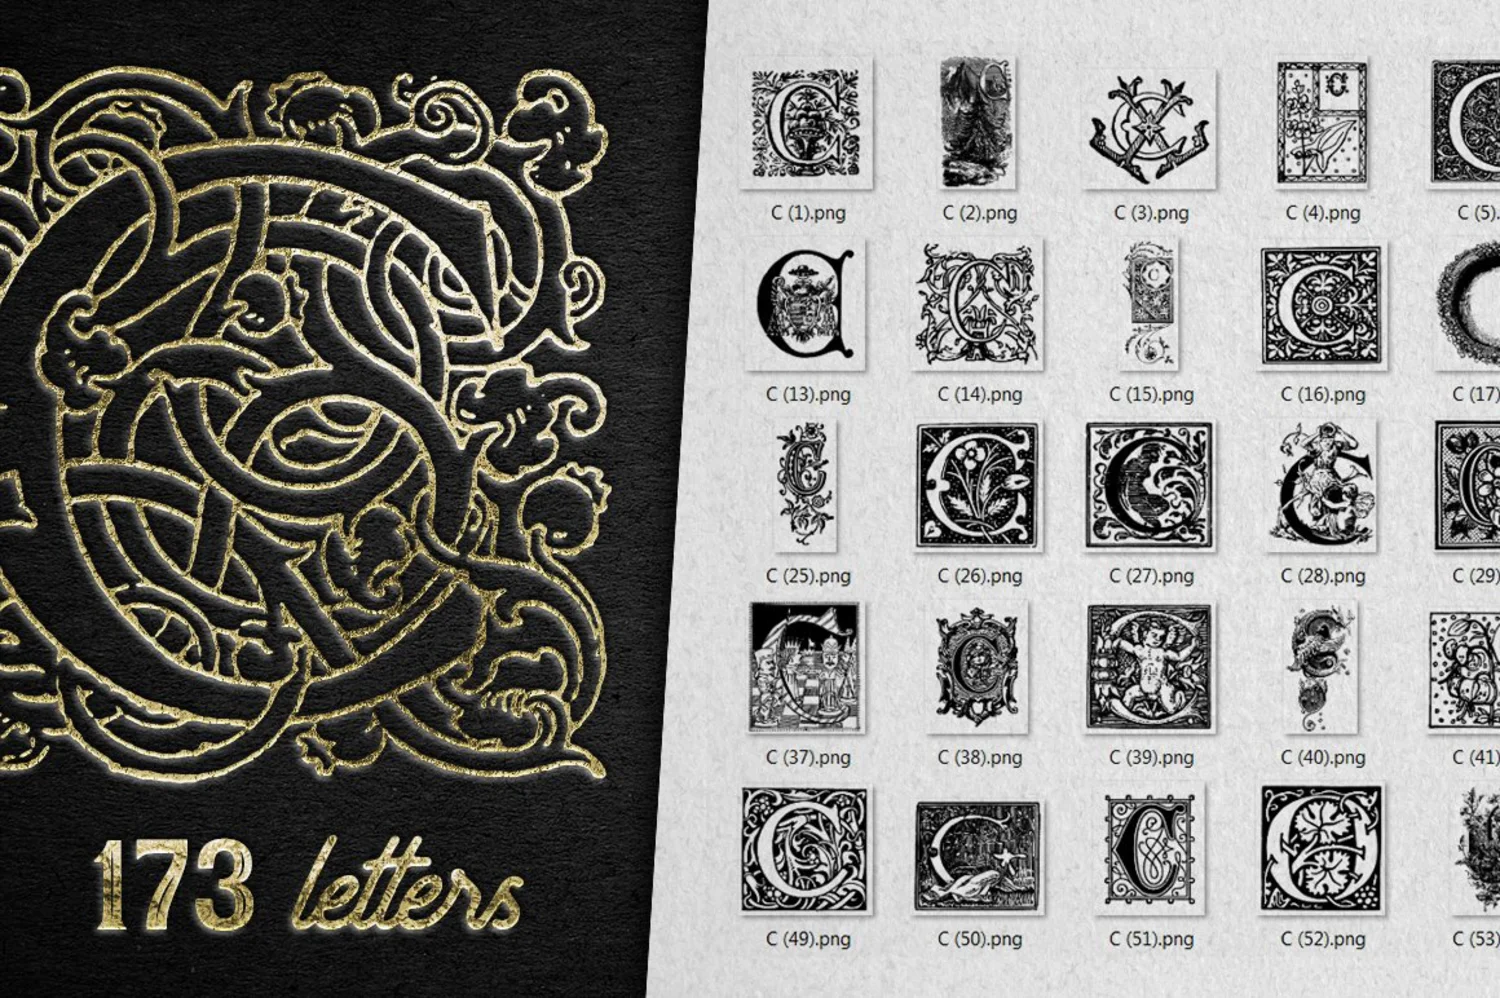 2222 2800+欧式复古装饰字母矢量图纹素材设计大包 VINTAGE LETTERS COLLECTION